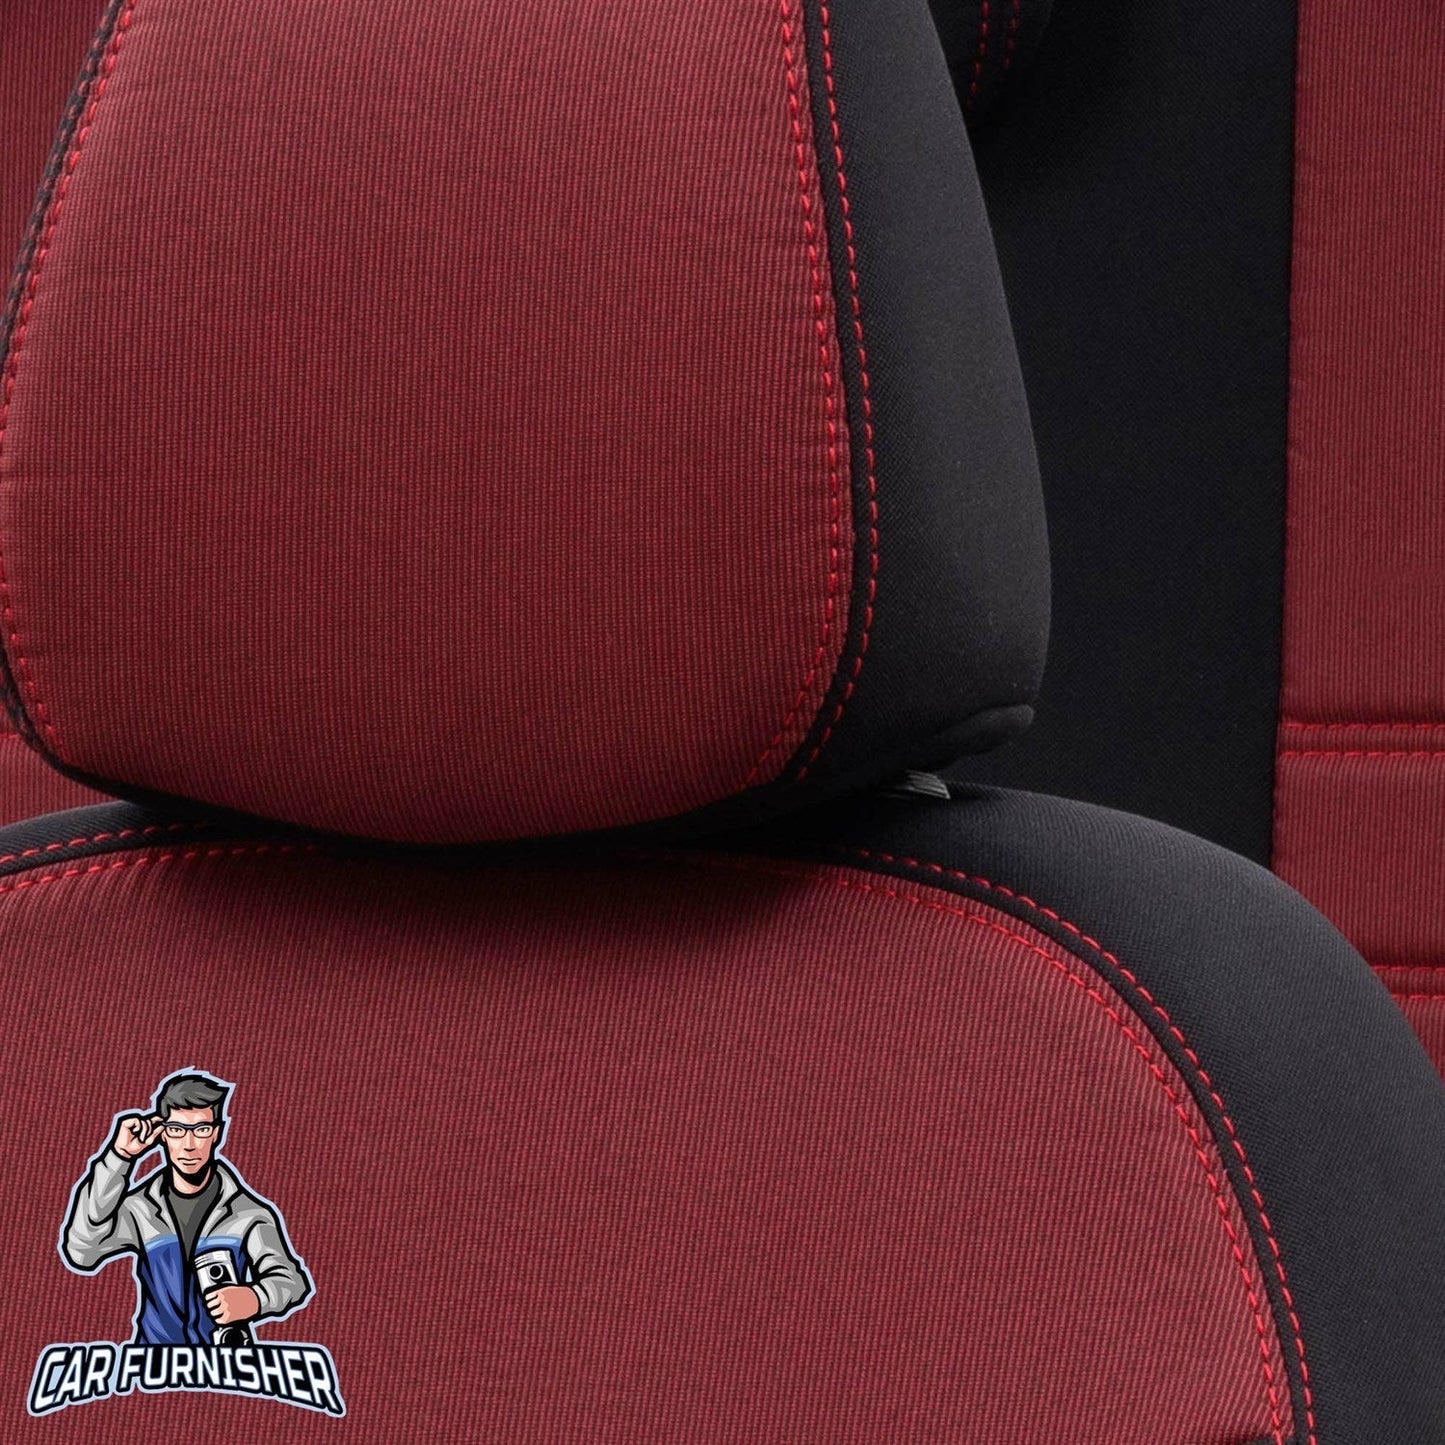 Chevrolet Captiva Seat Cover Original Jacquard Design Red Jacquard Fabric